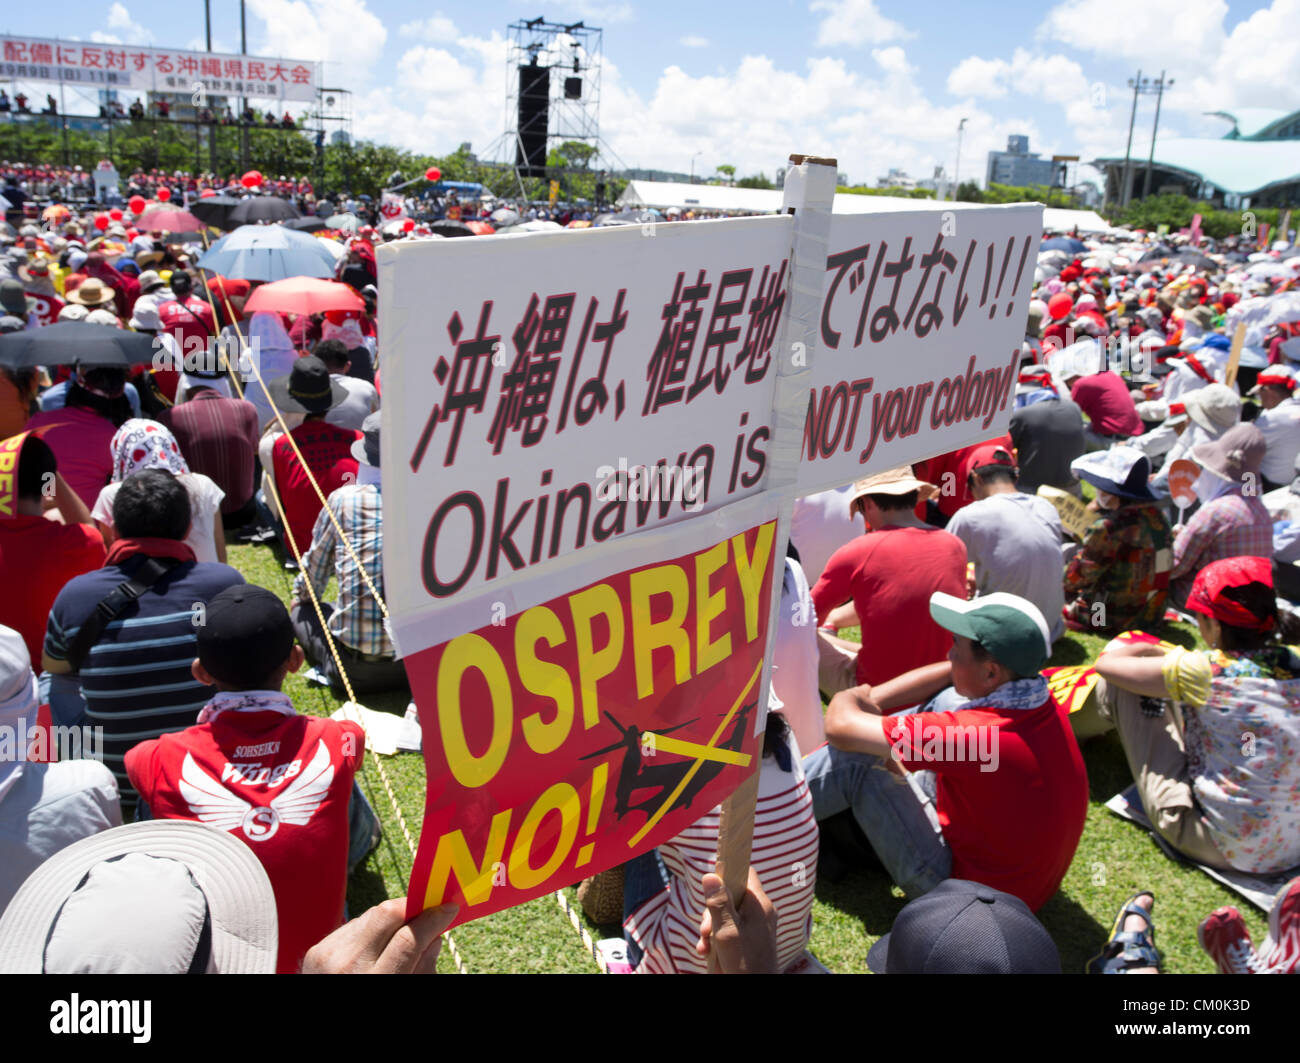 US Marine Corps MV-22 Osprey helicopters devraient être basés à Futenma Marine Corps Air Station dans le centre de Okinawa. Dans la ville de Ginowan, des dizaines de milliers d'habitants de la protestation contre le mauvais dossier de sécurité de l'Osprey et la proximité de zones résidentielles de Futenma. 9/9/2012 Banque D'Images